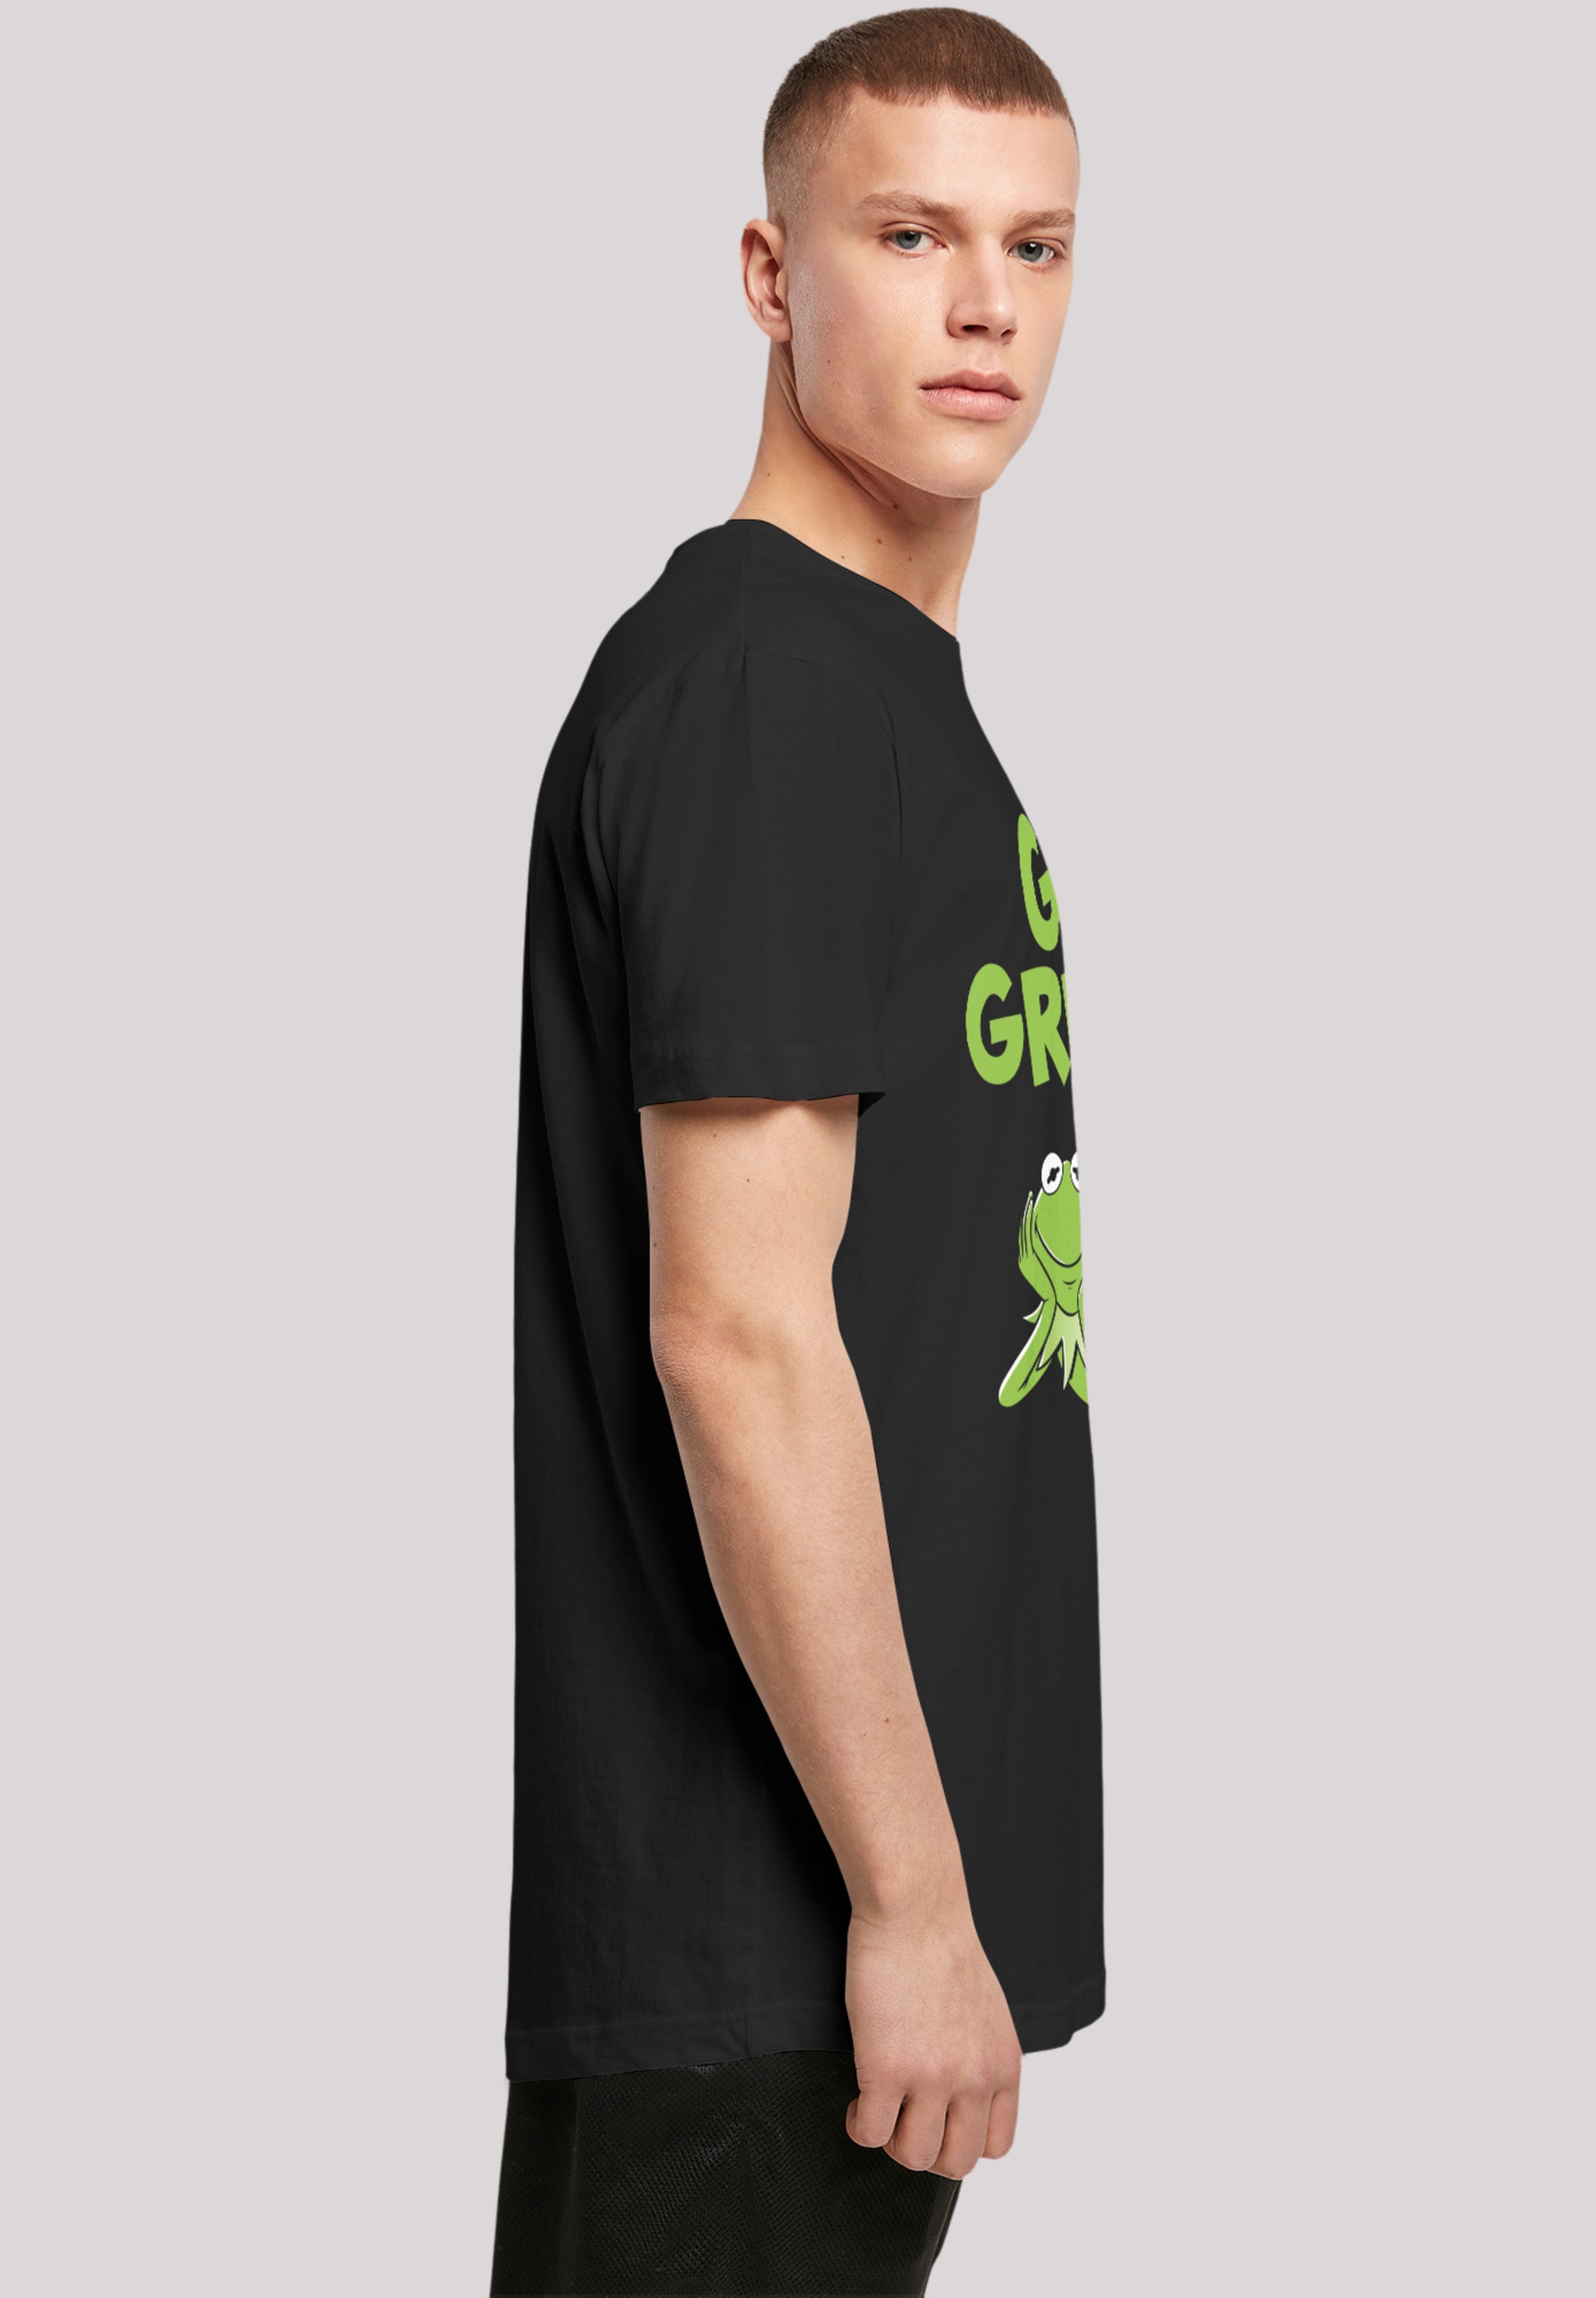 F4NT4STIC T-Shirt »Disney Muppets Go Green«, Premium Qualität online kaufen  | BAUR